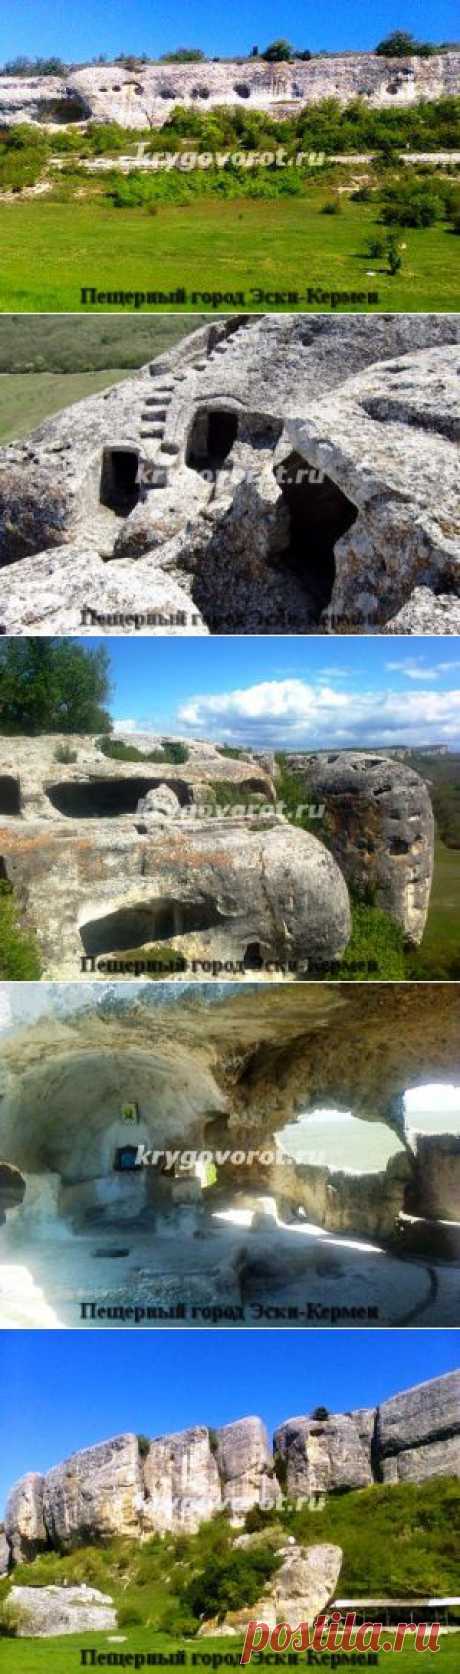 Эски-Кермен – средневековый пещерный город в Крыму | Круговорот отдыха